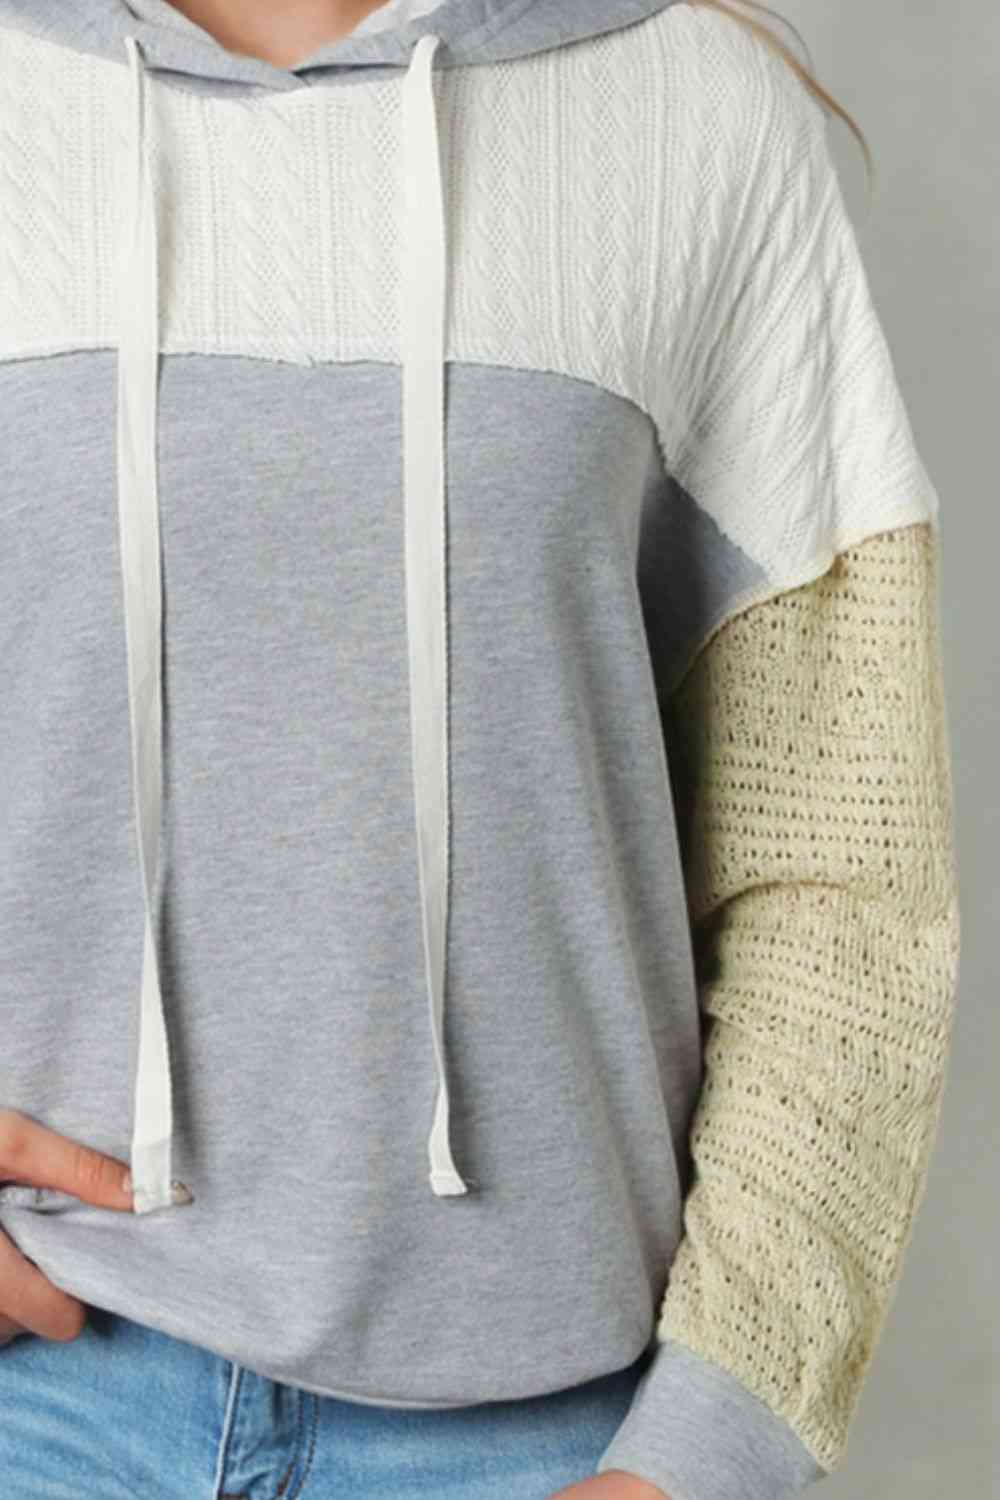 Splicing Drawstring Sweatshirt Trendsi